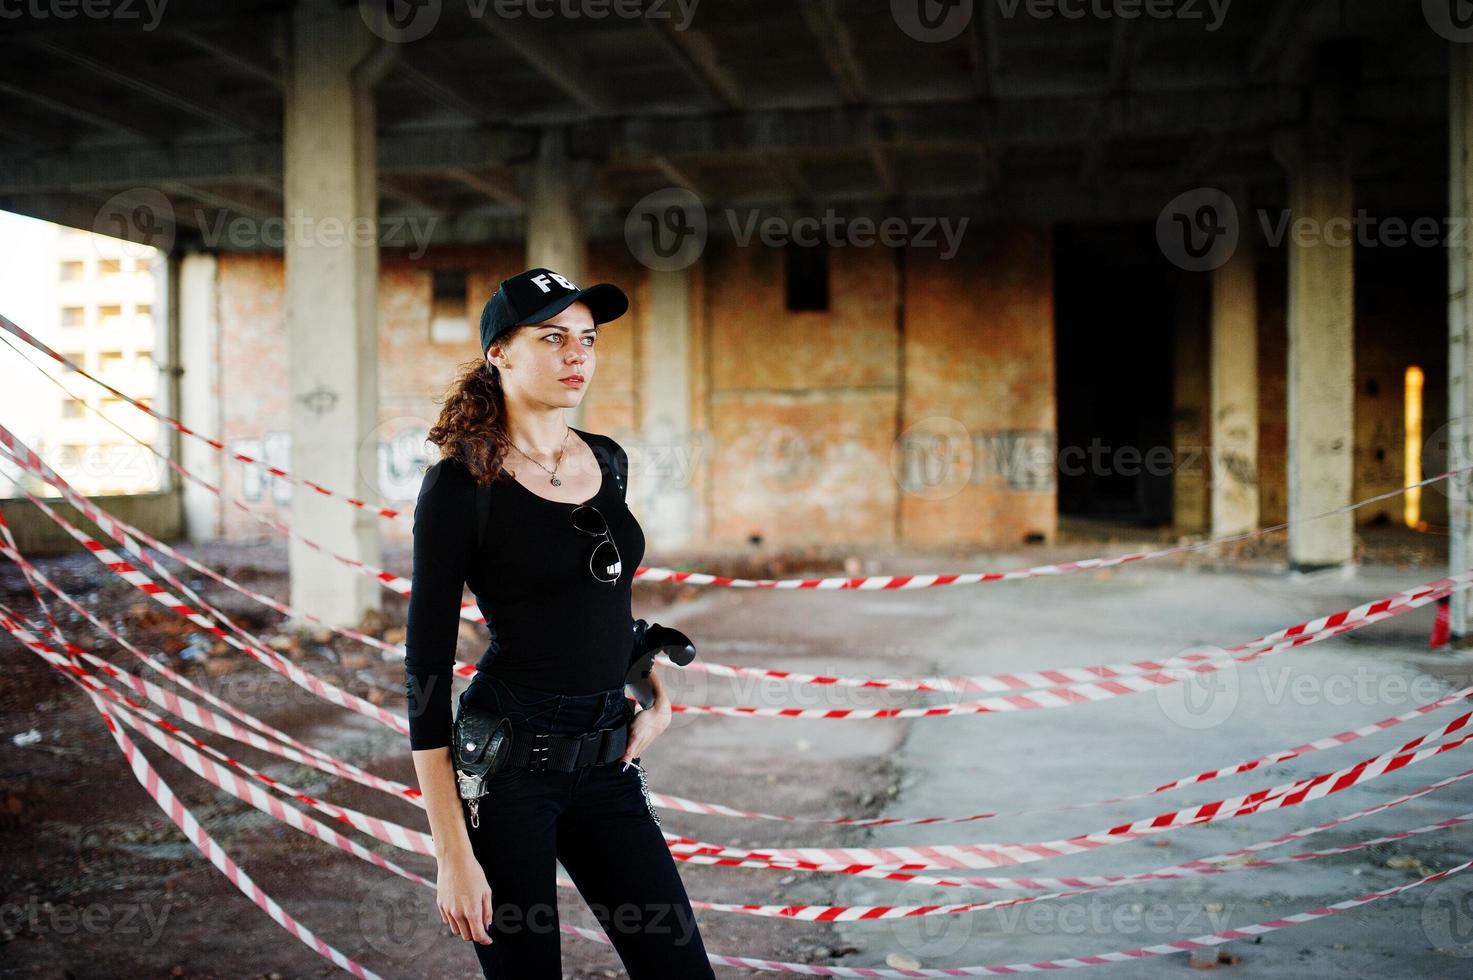 agent féminin sexy du fbi dans un endroit abandonné. photo